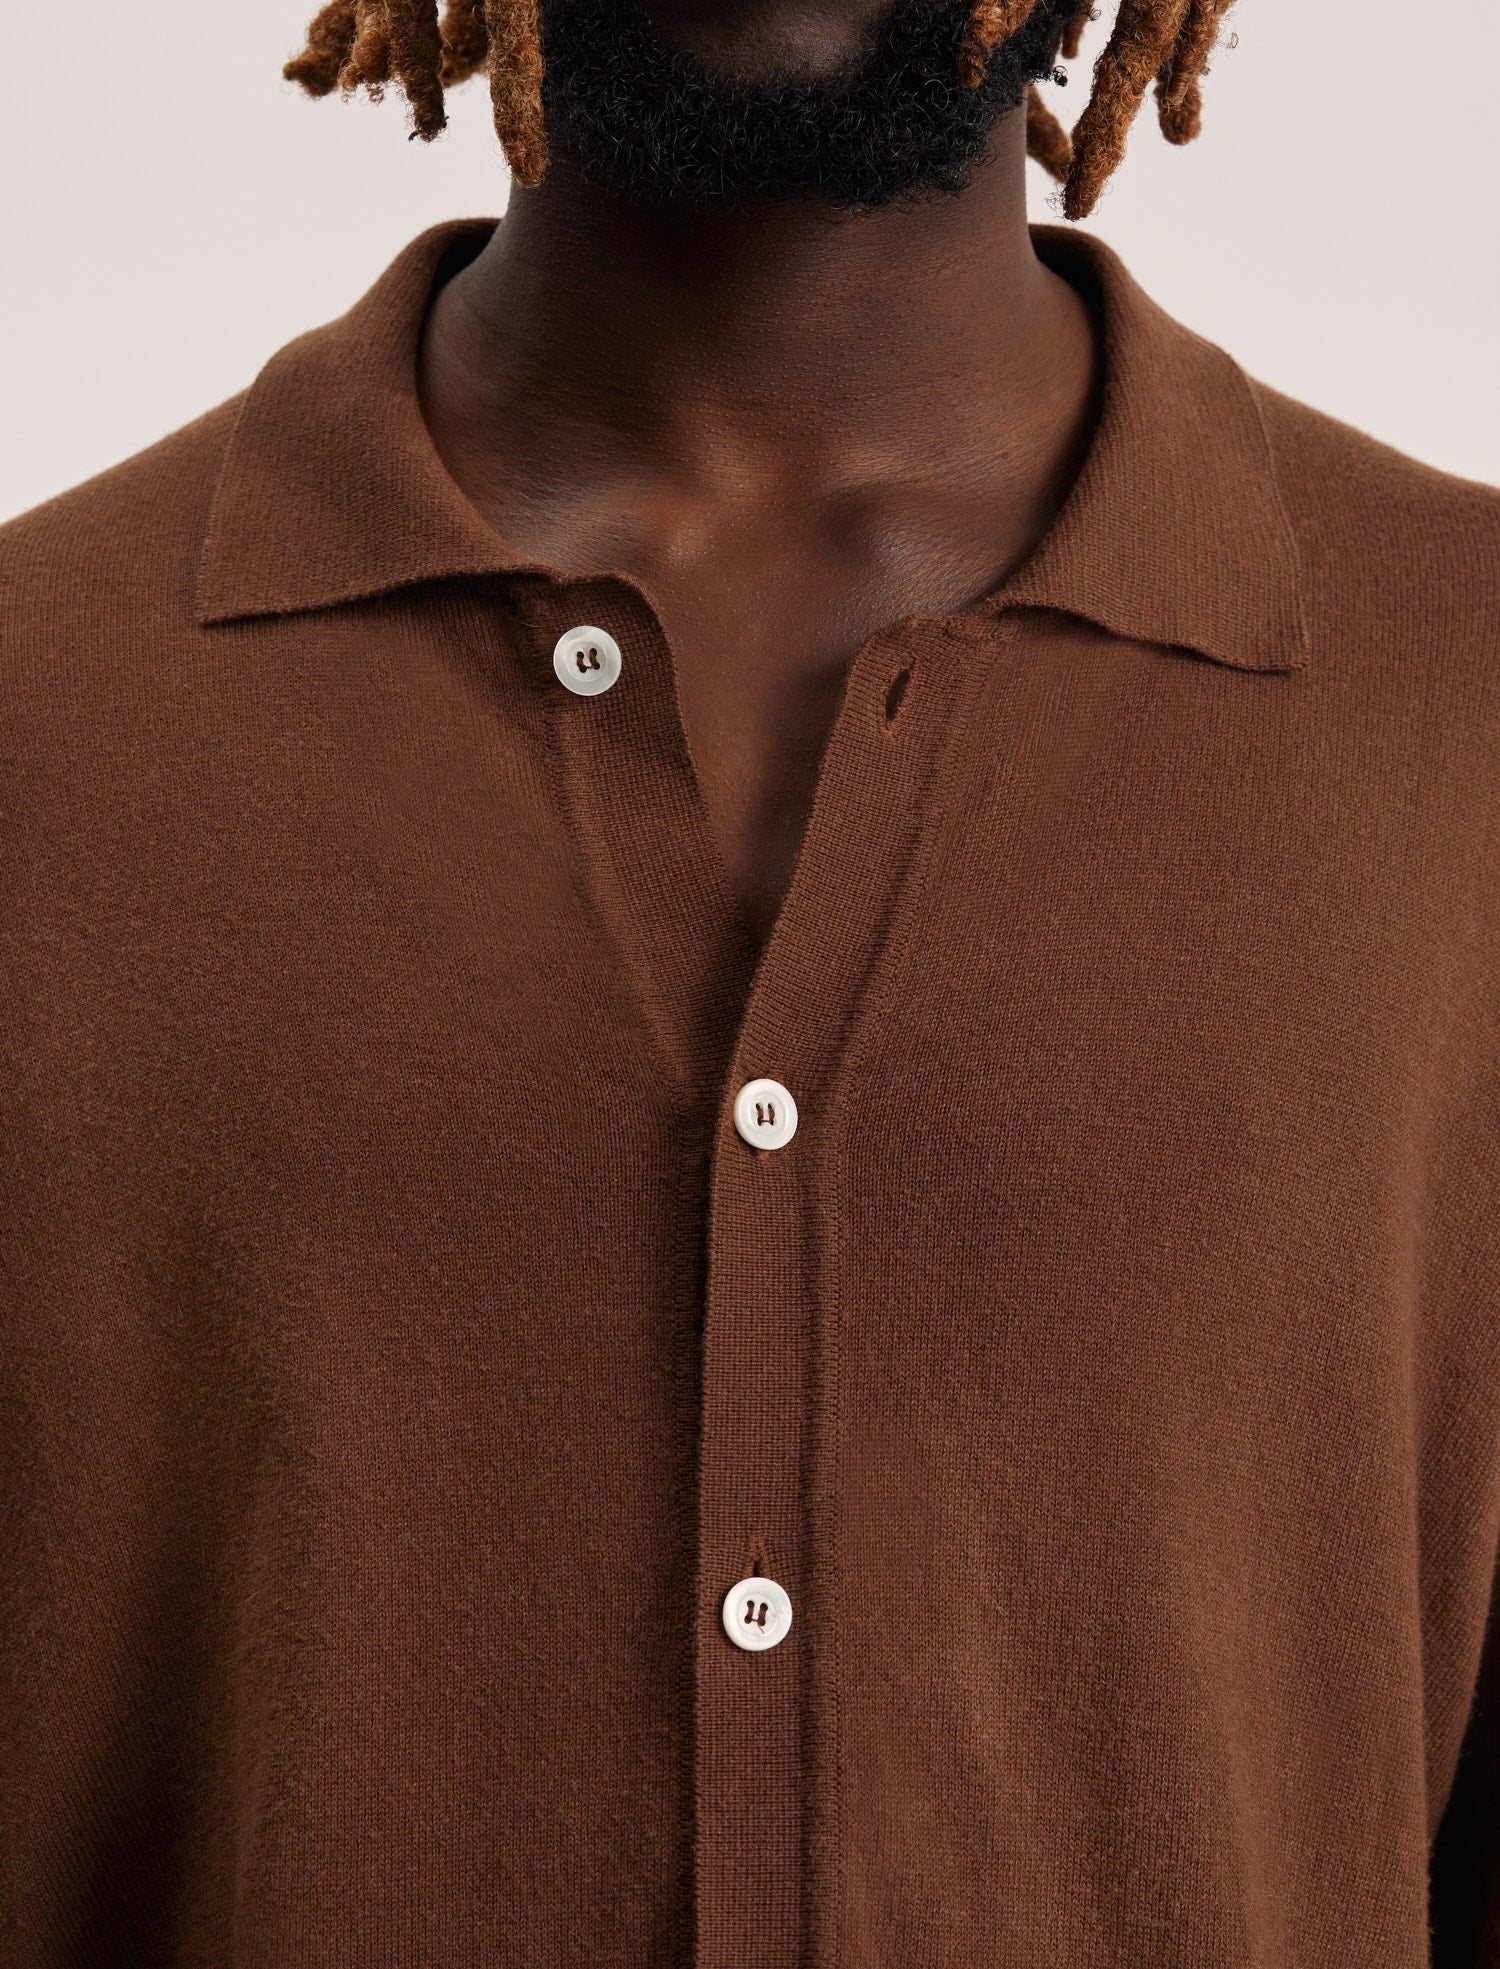 ANOTHER Shirt 6.0, Light Brown